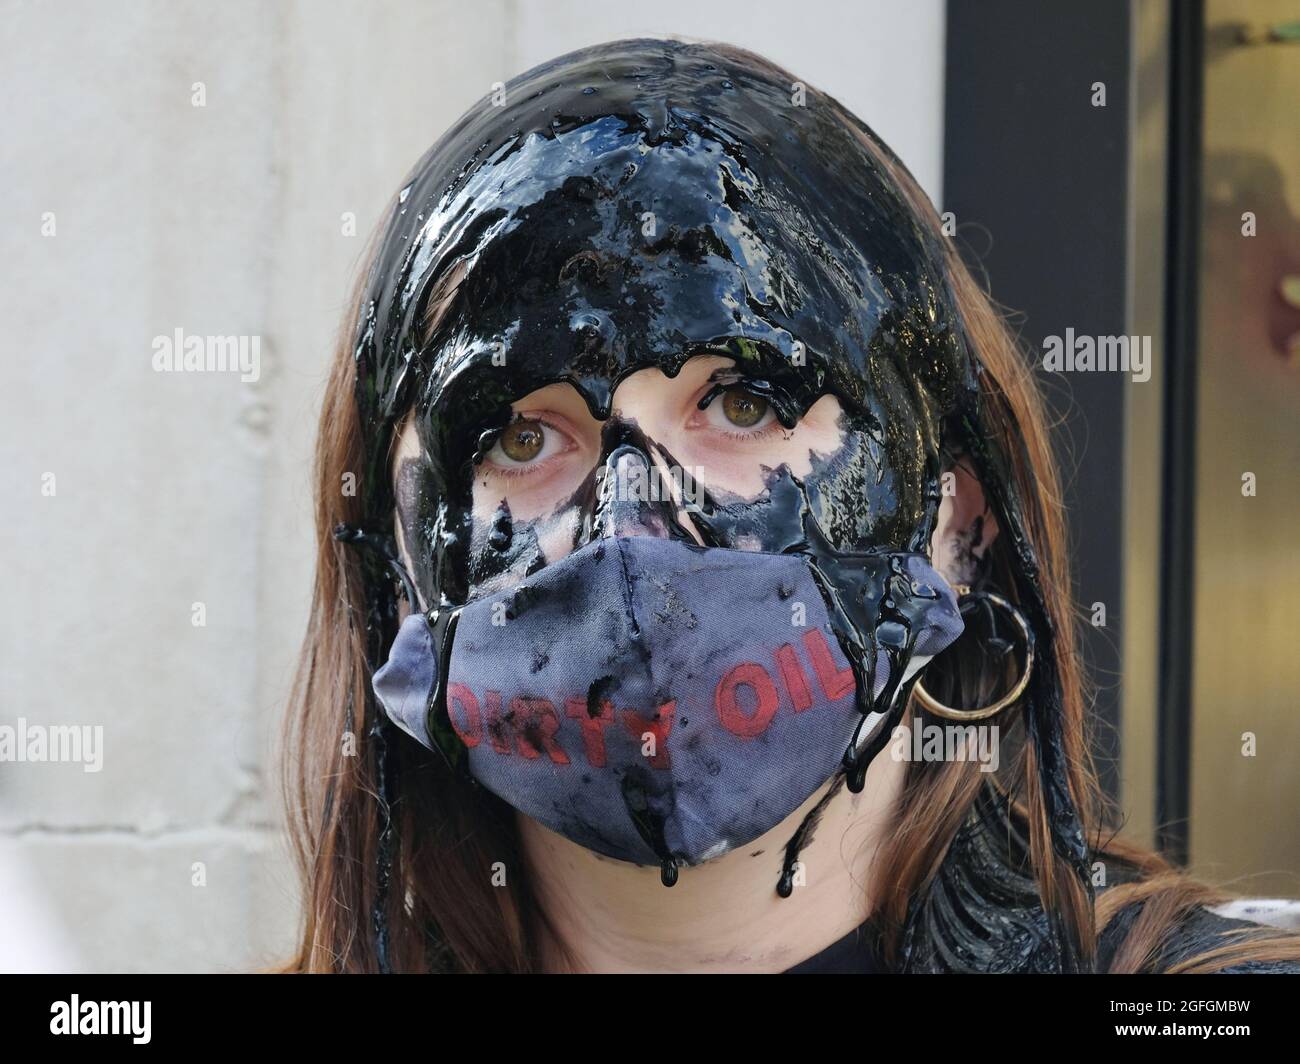 Londres, Reino Unido. Una mujer vierte aceite falso sobre su cabeza en una protesta para destacar las preocupaciones ambientales vinculadas a la industria de la moda rápida. Foto de stock